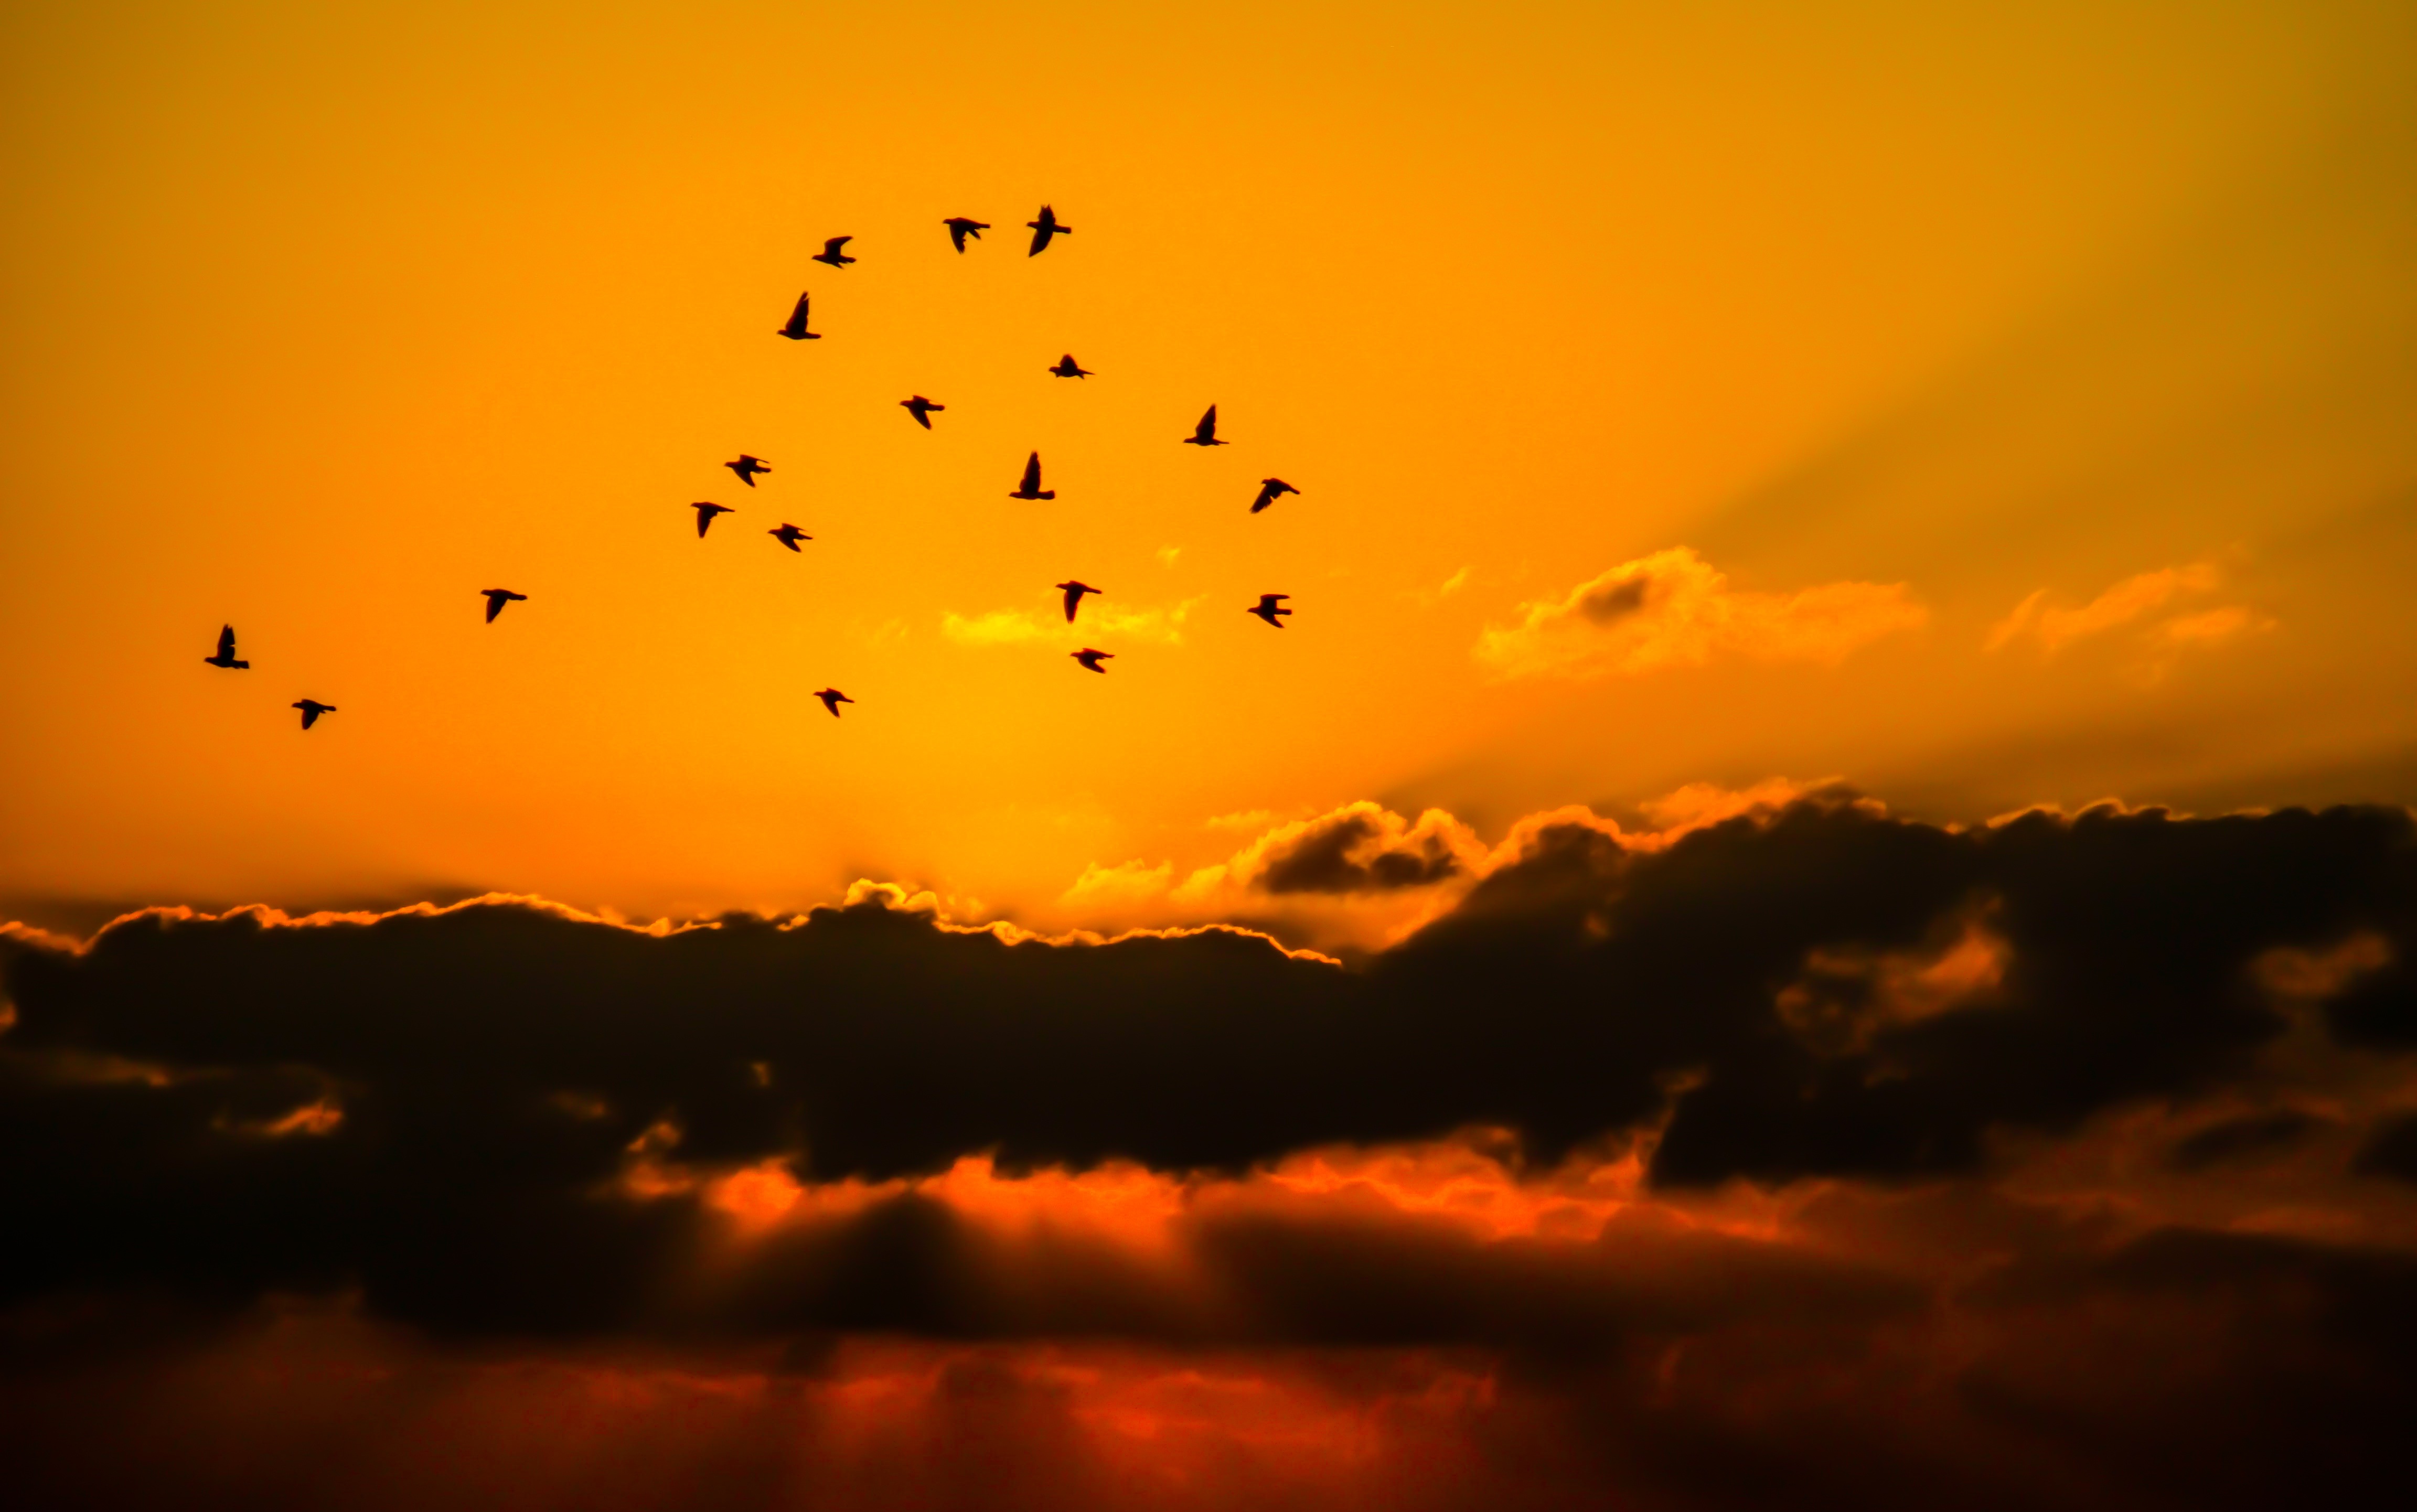 Скачать обои бесплатно Птицы, Небо, Облака, Силуэт, Стая Птиц, Солнечный Луч, Земля/природа, Закат Солнца, Оранжевый Цвет) картинка на рабочий стол ПК